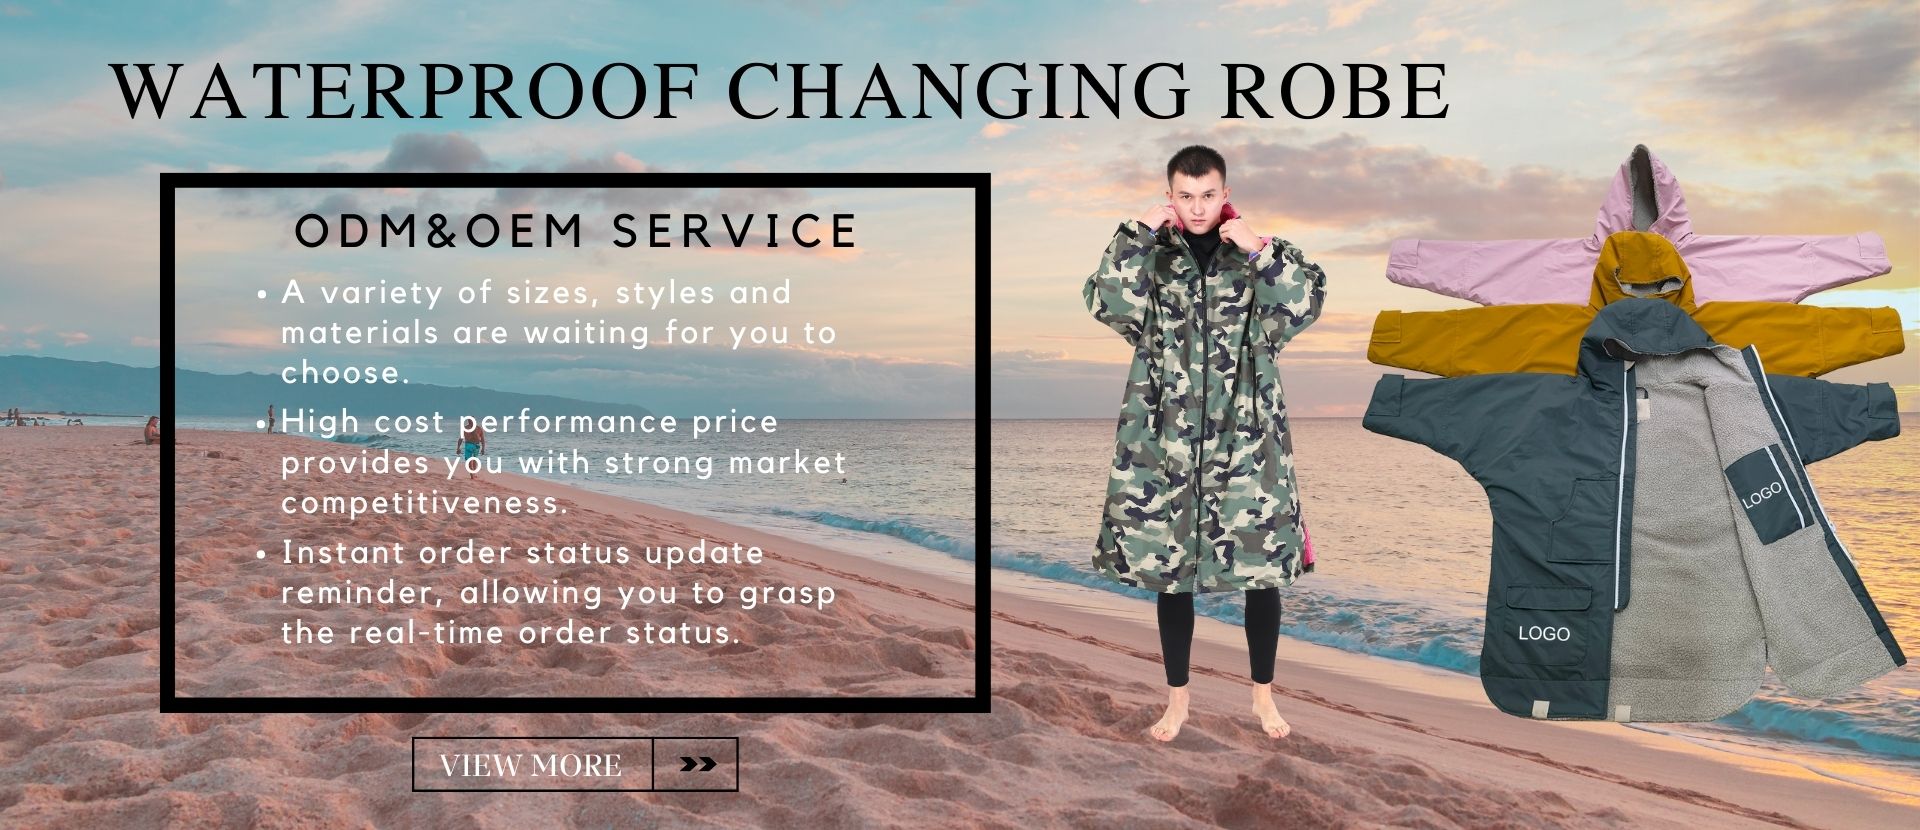 Changing robe